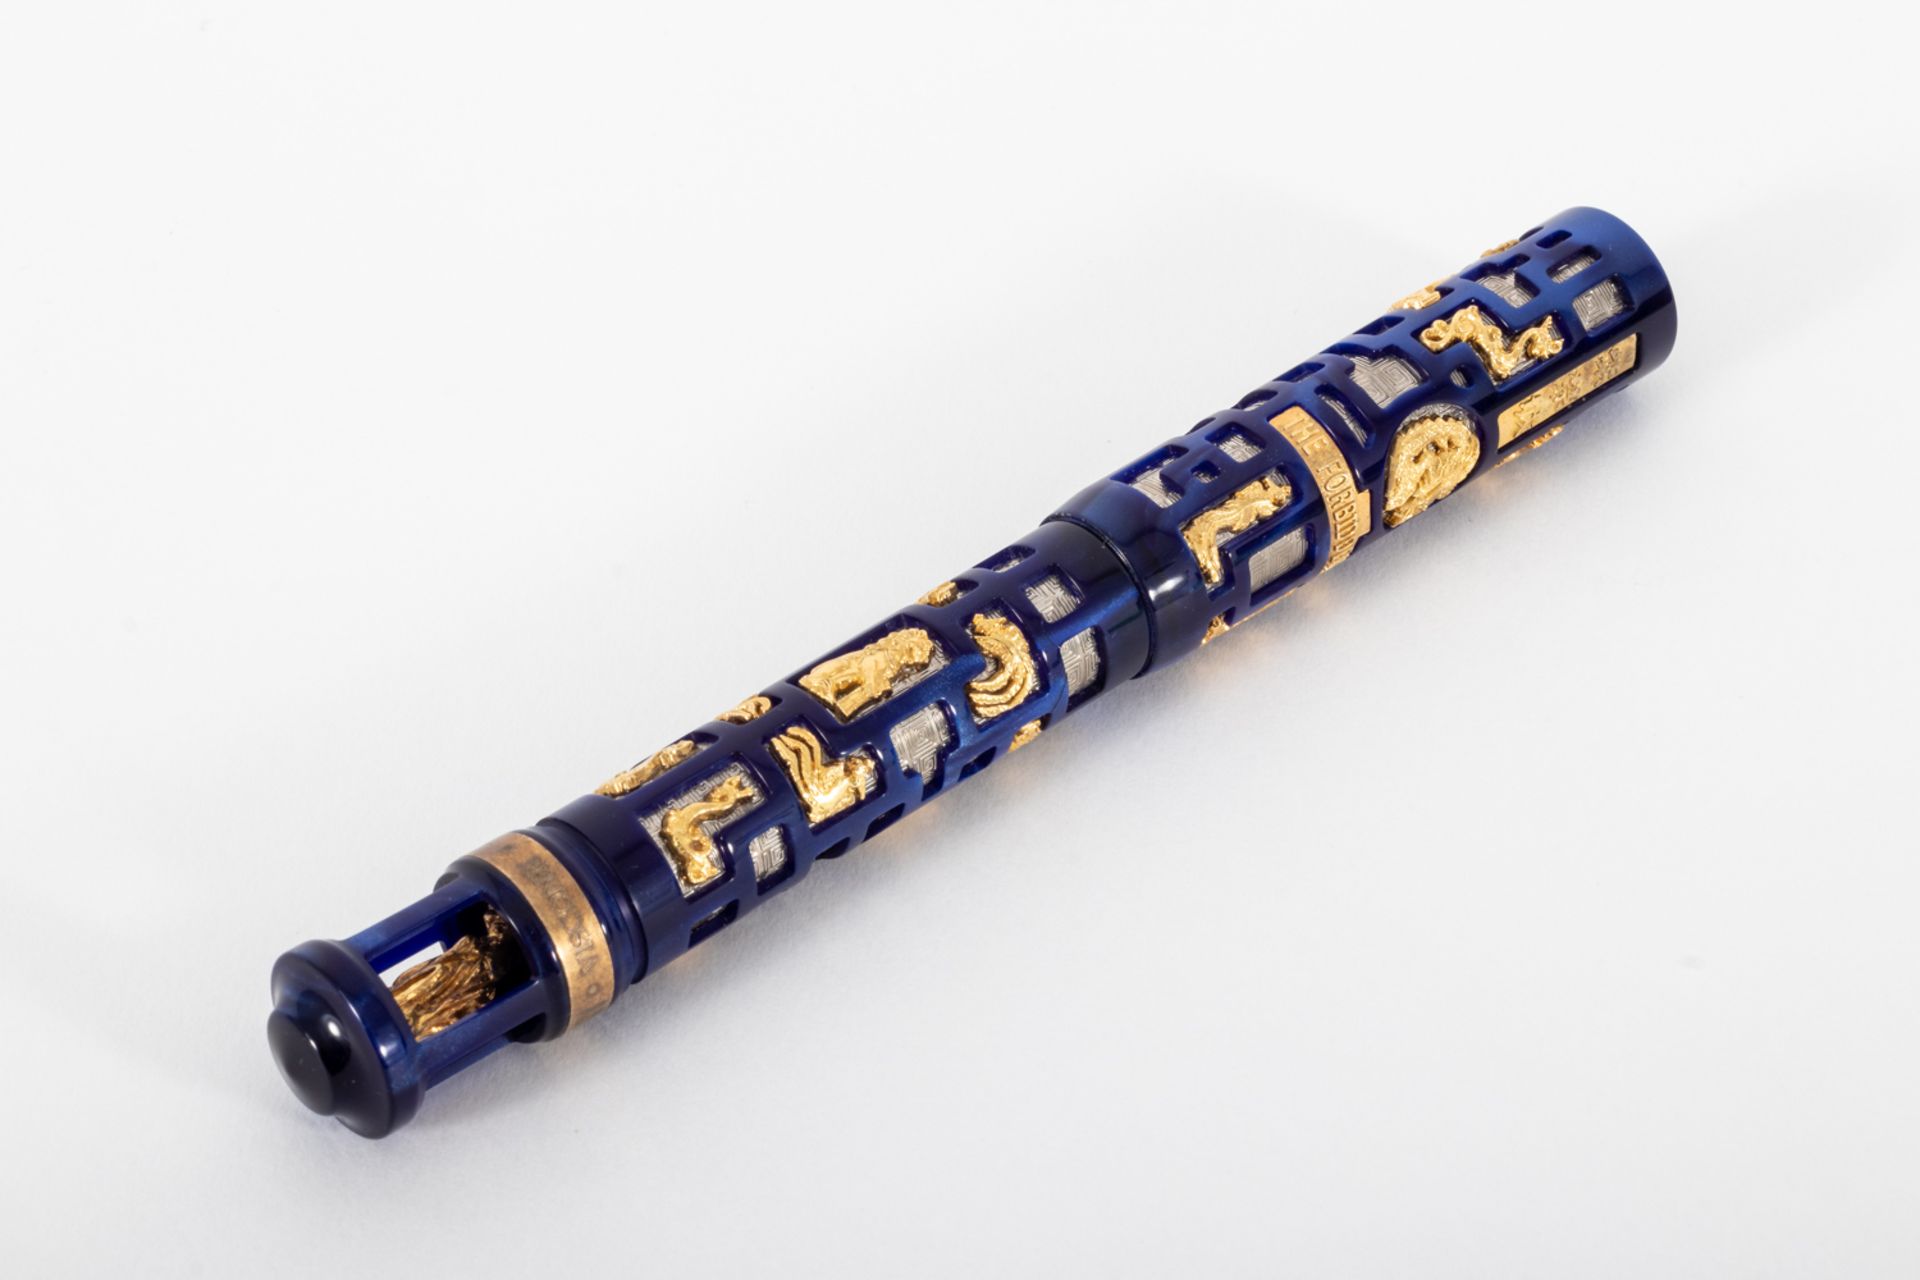 Visconti fountain pen "The Forbidden City" collection, 2005. 